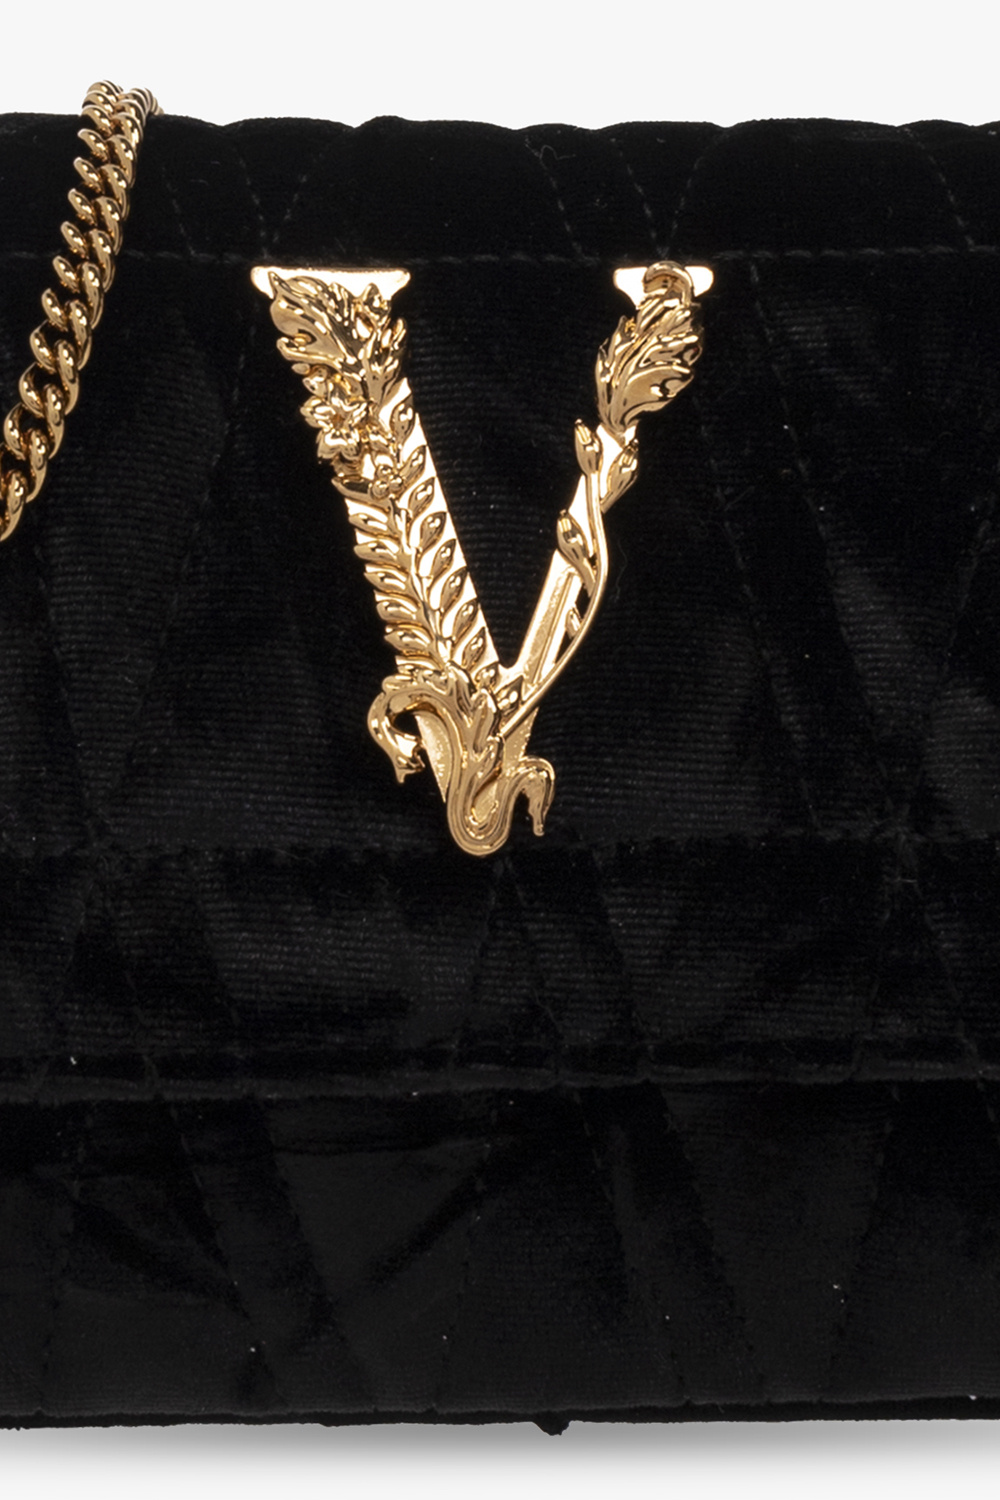 Versace Virtus Shoulder bag 377341